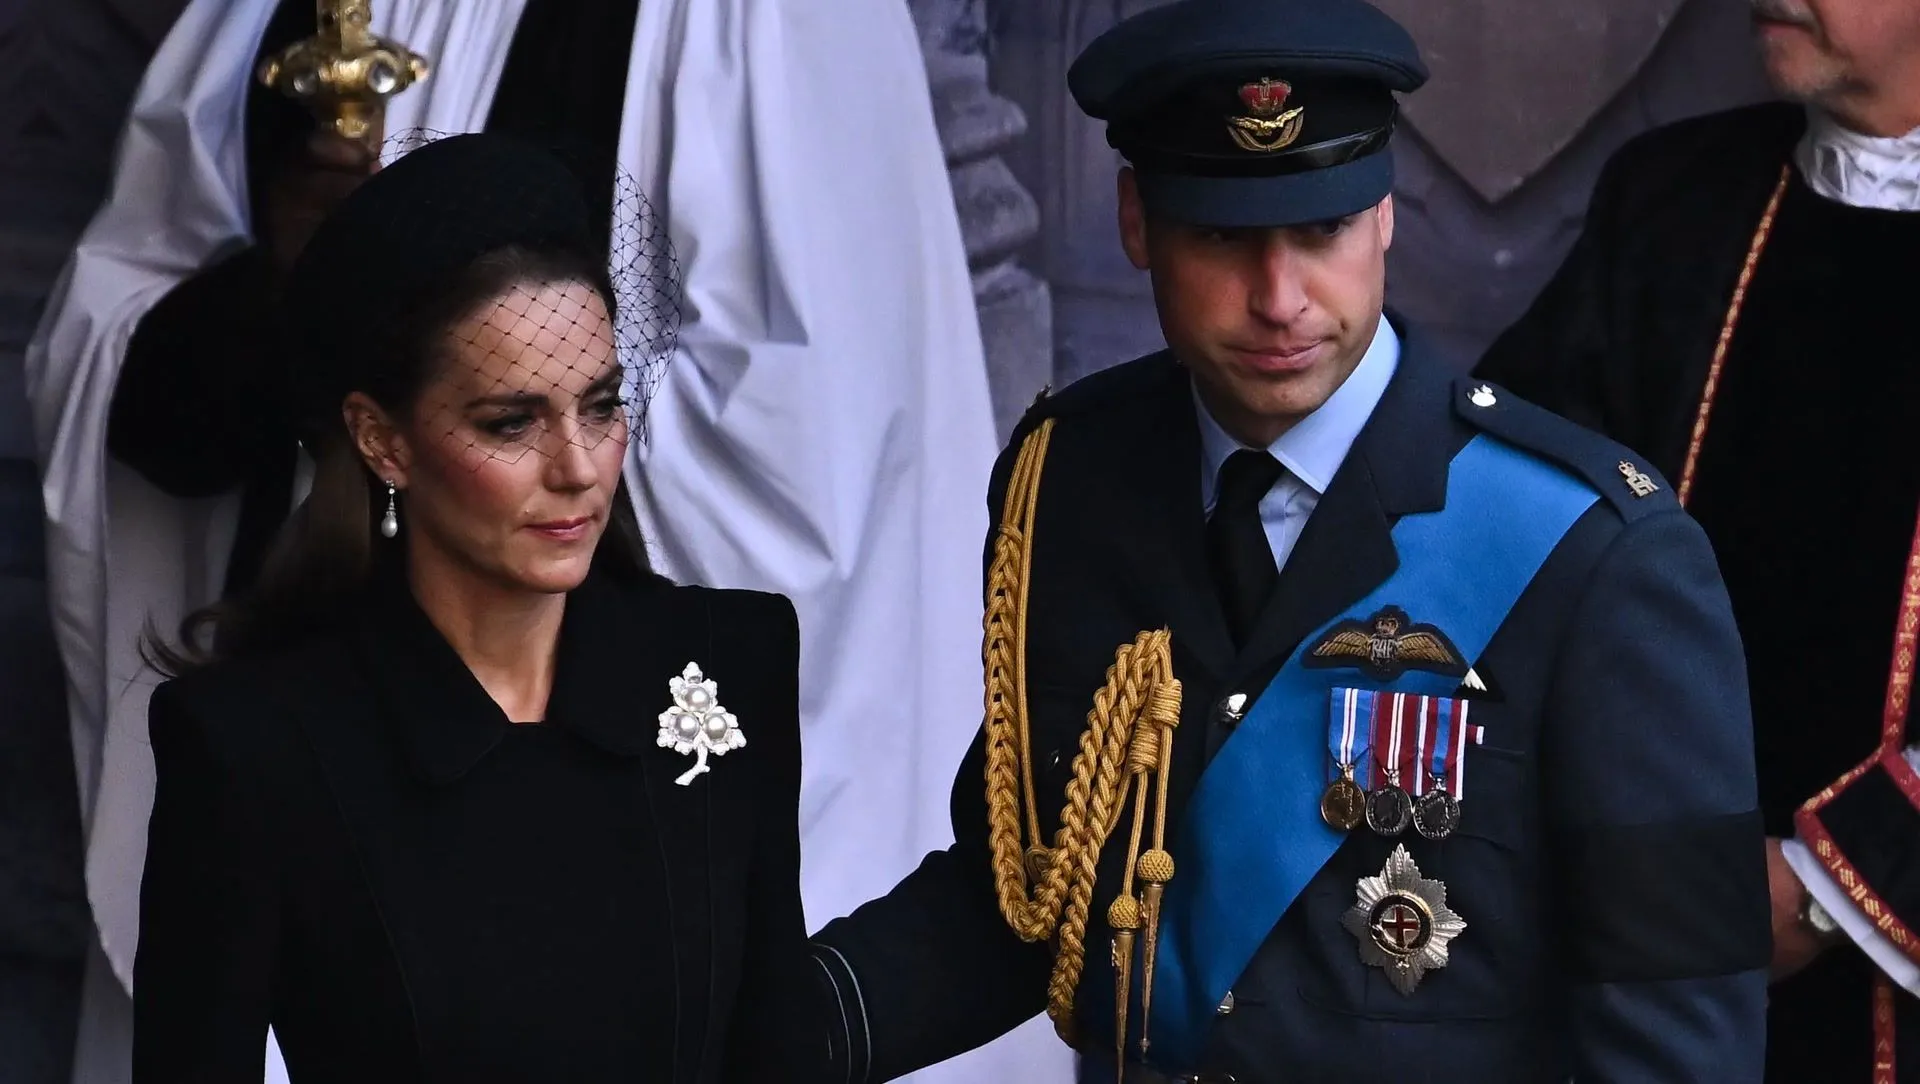 Le Prince William réconforte la Duchesse Kate avec ce geste : Des images qui vous collent à la peau